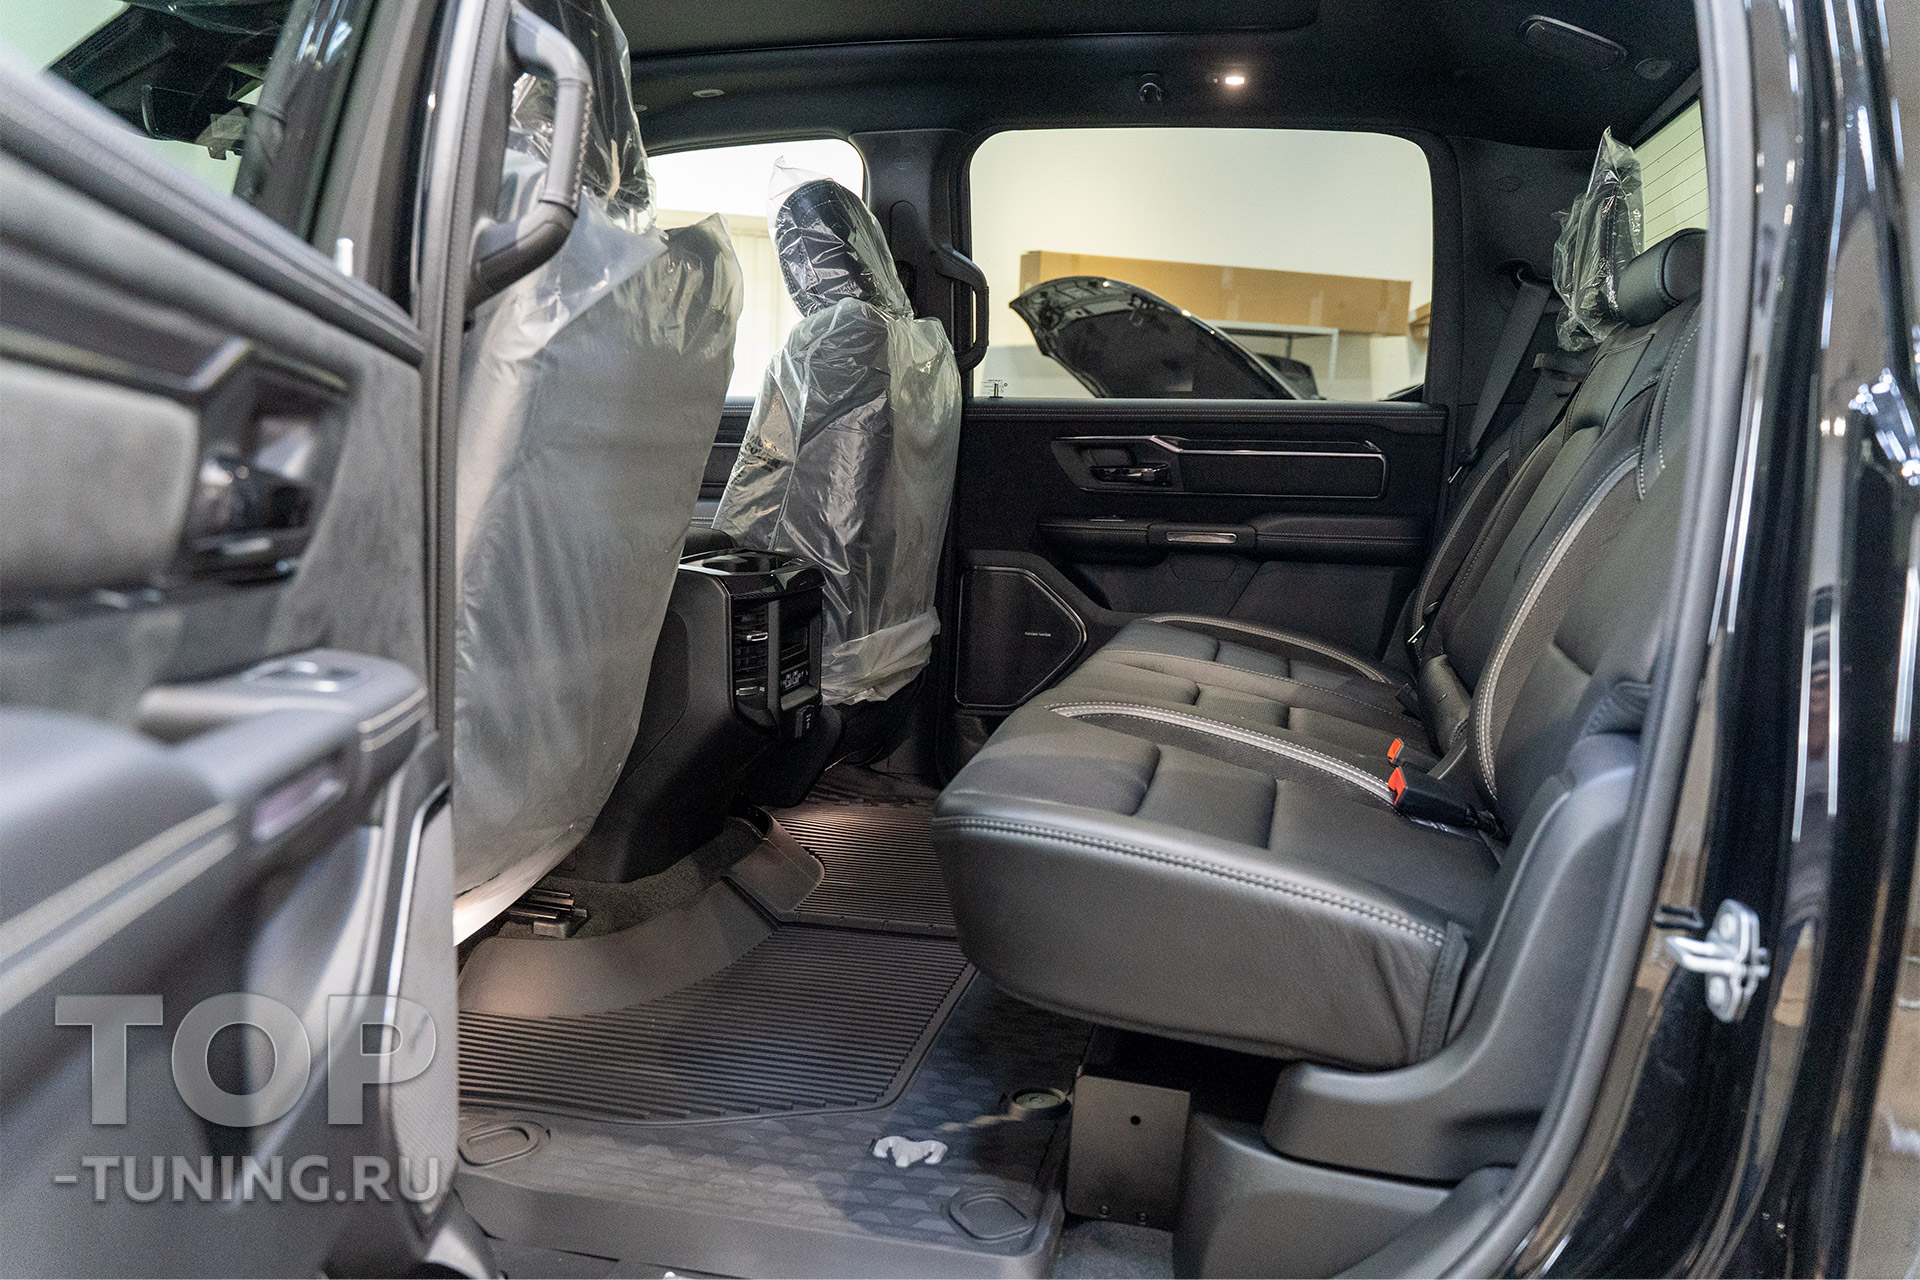 Новый Dodge Ram TRX – интерьер, детали салона и отличия от базовой версии